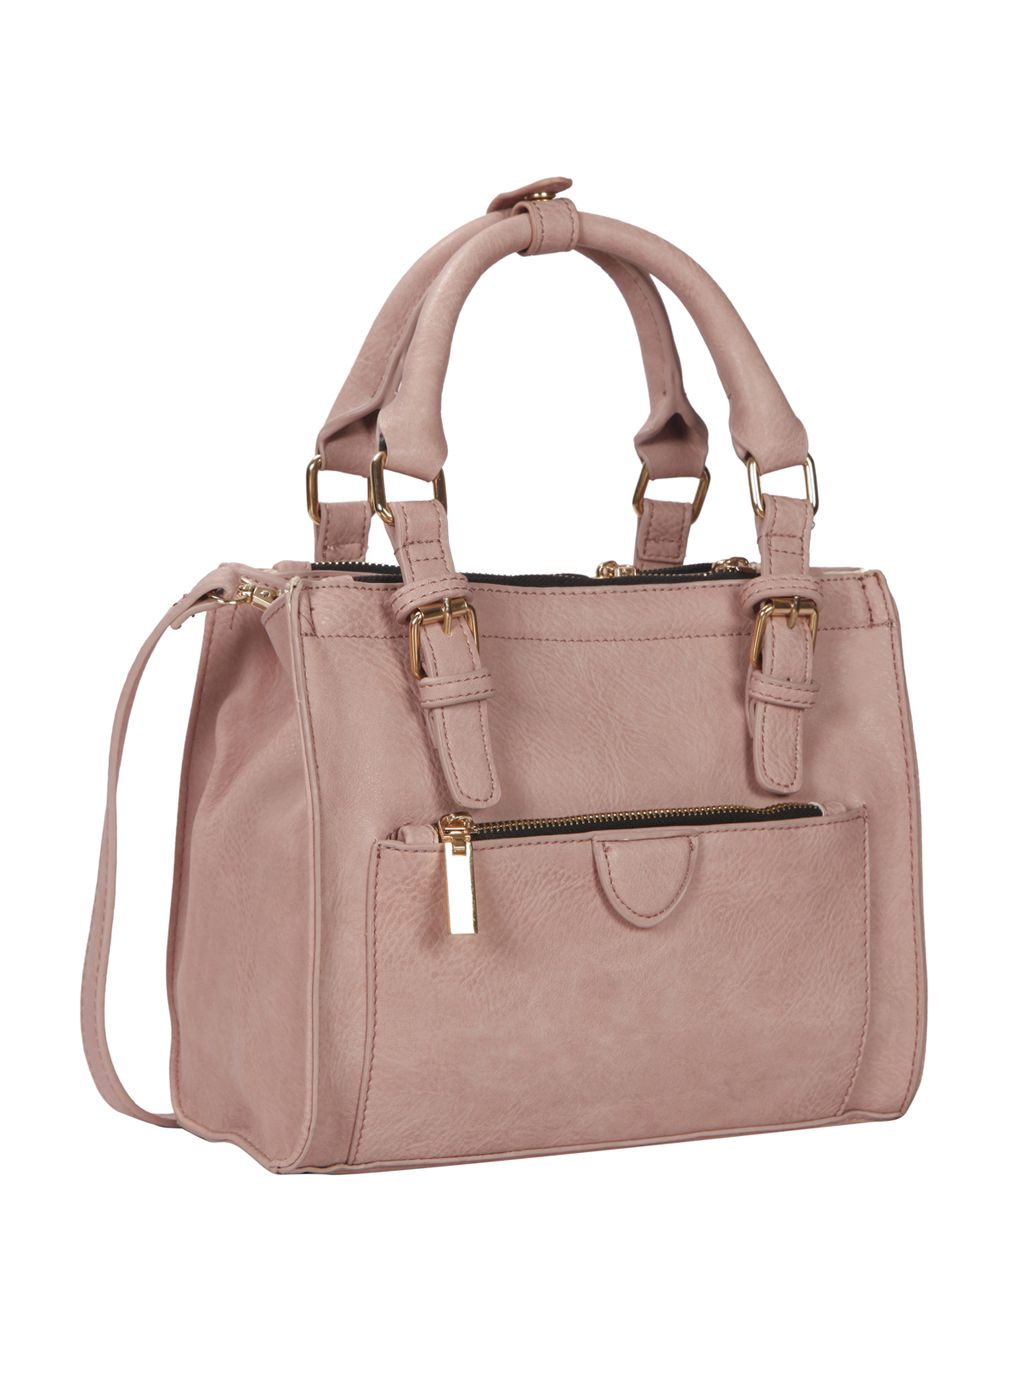 satchel bags online